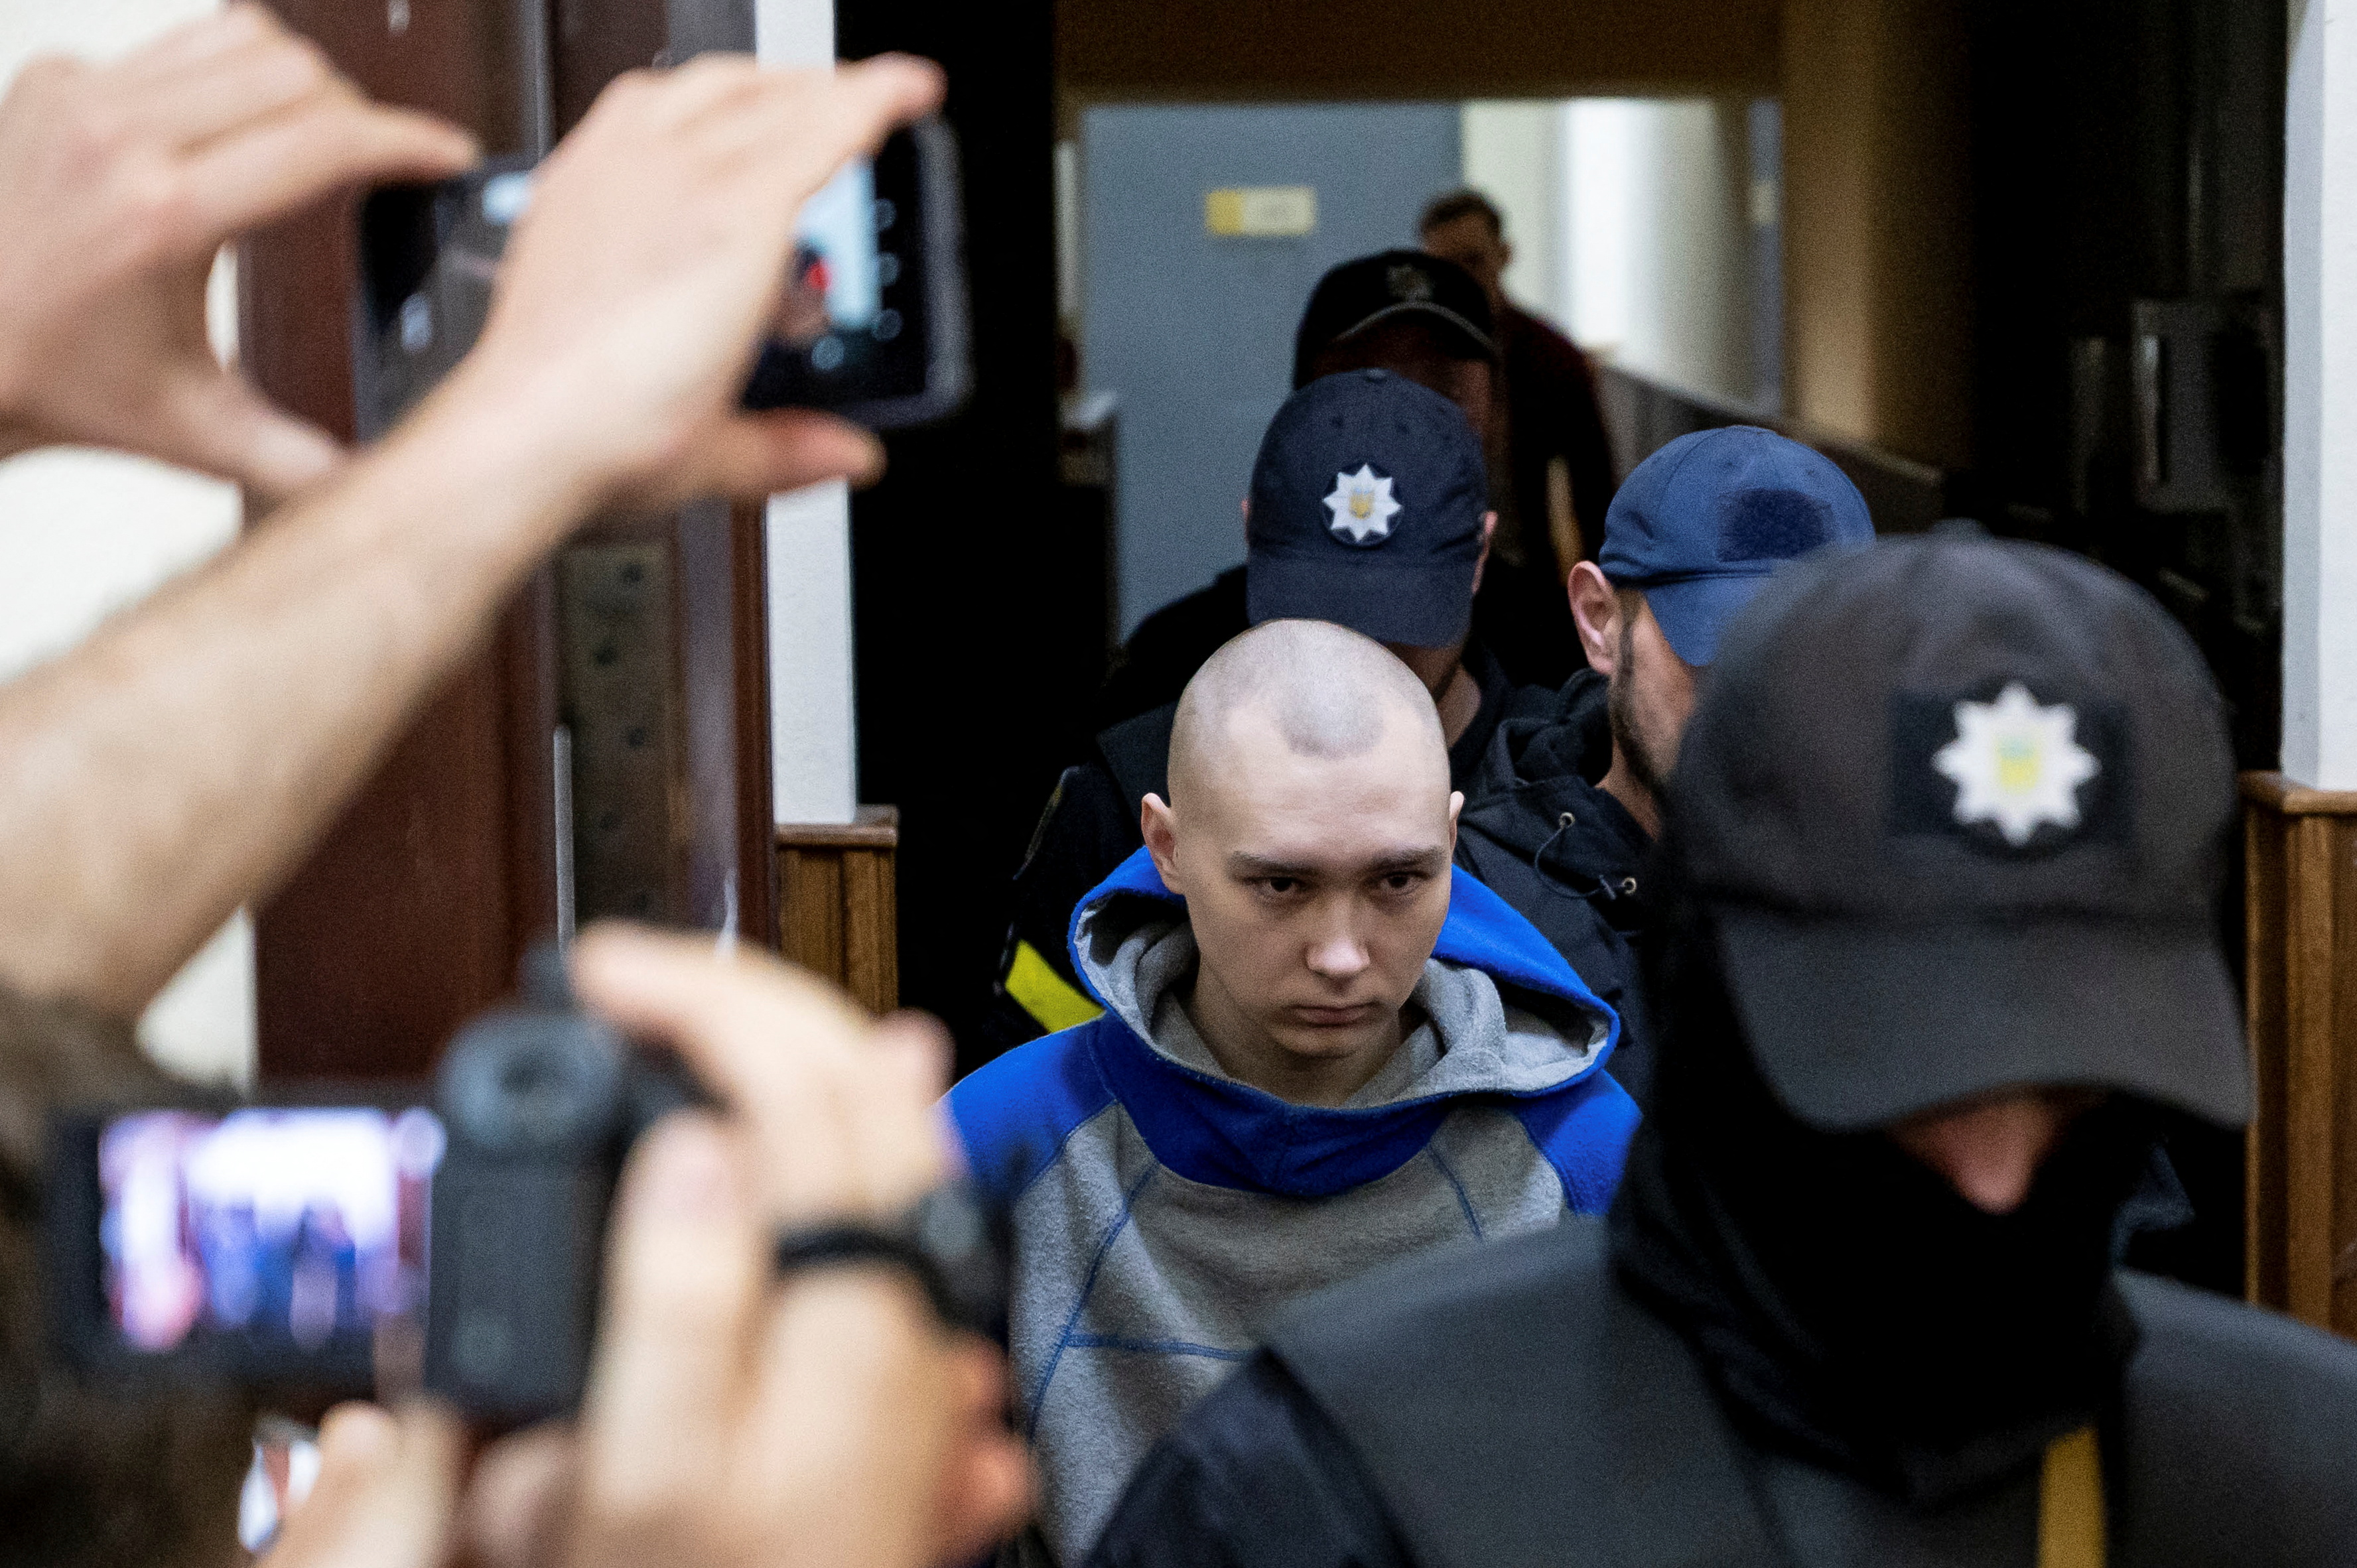 El soldado ruso Vadim Shyshimarin, de 21 años, sospechoso de violar las leyes y normas de la guerra, llega a una audiencia judicial, en medio de la invasión rusa de Ucrania, en Kiev (Reuters)